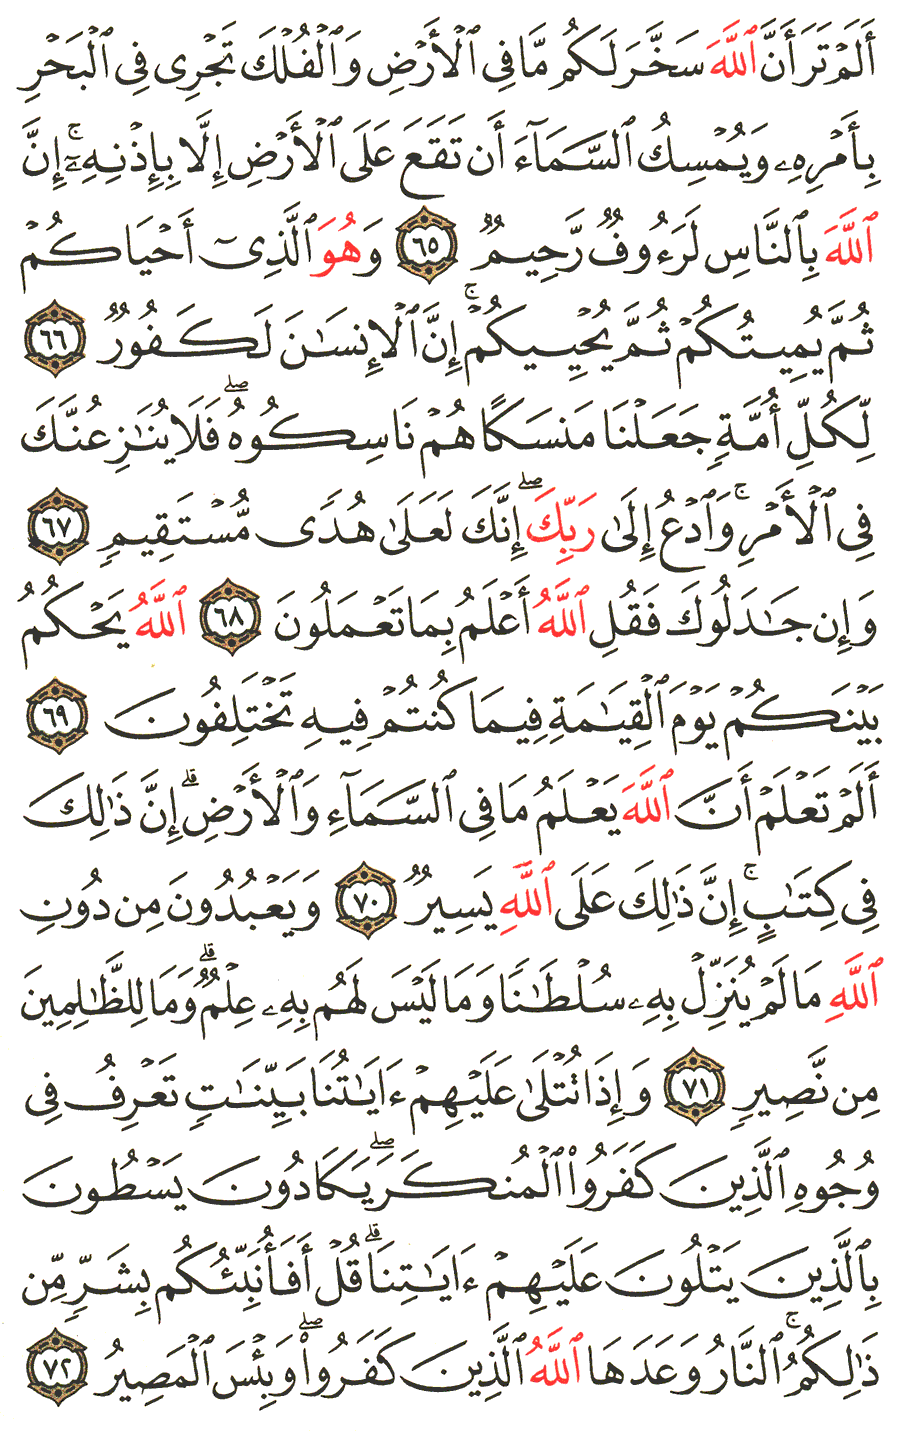 الصفحة 340 من القرآن الكريم